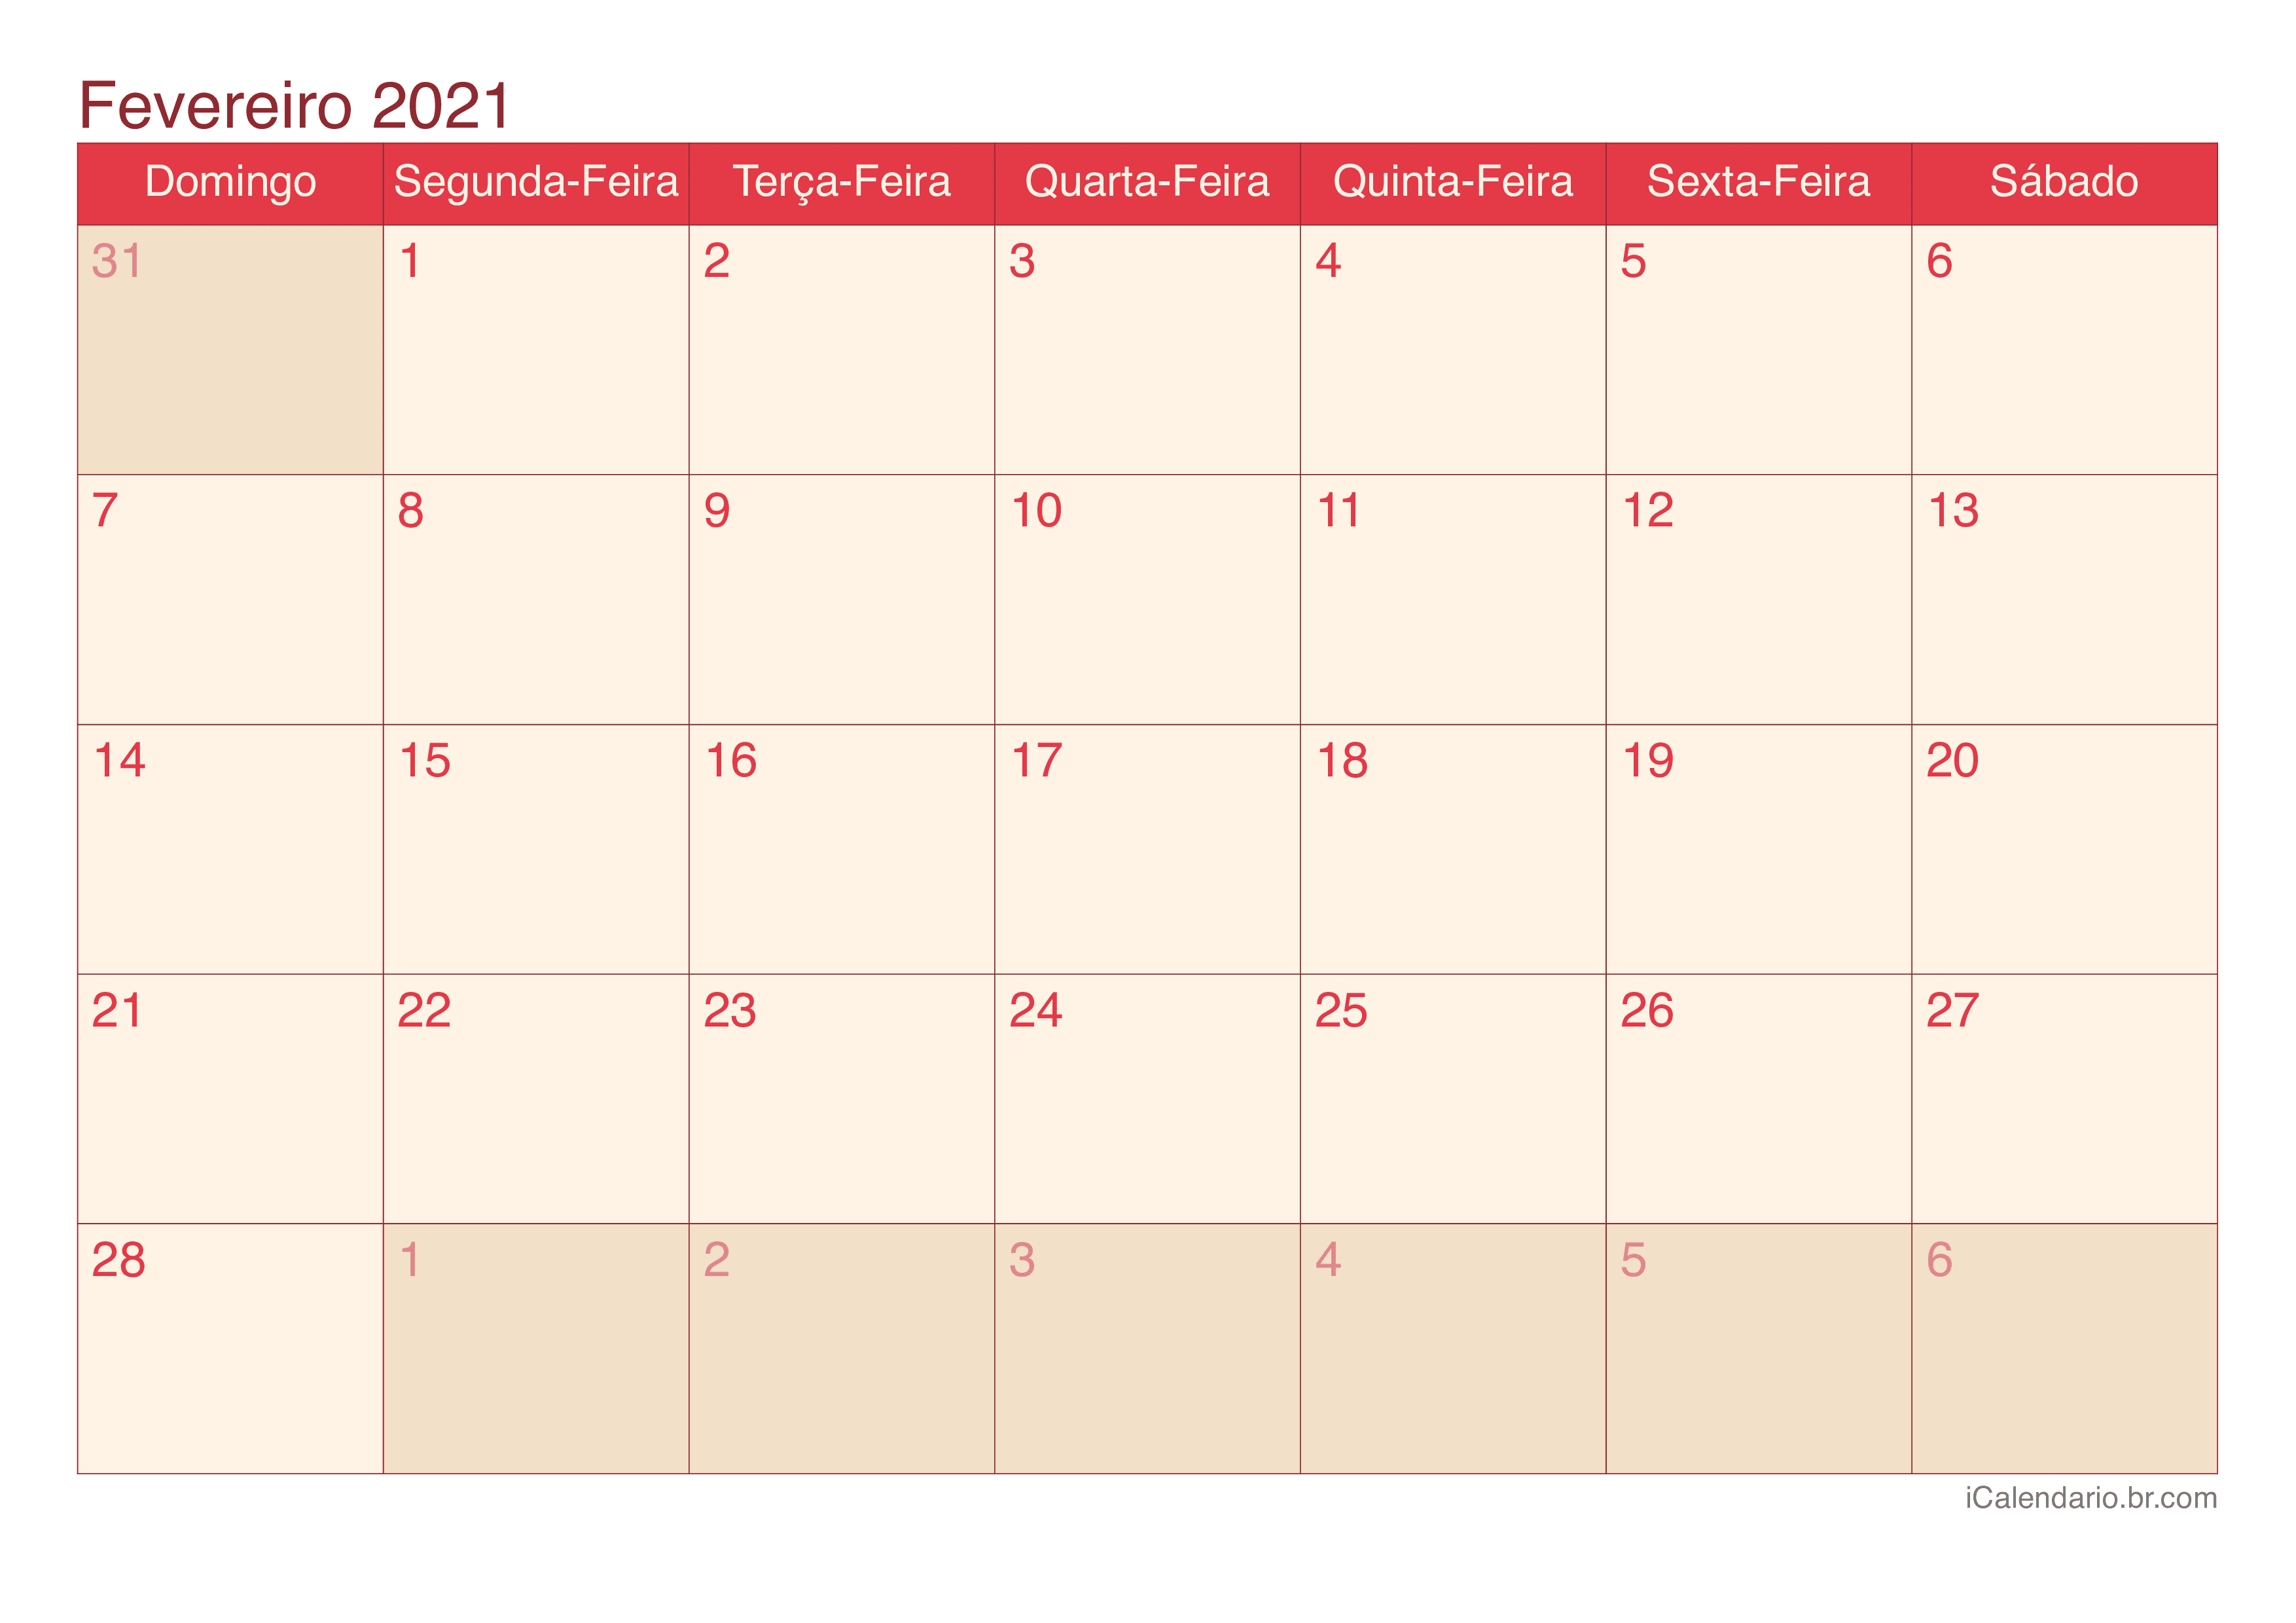 Calendário de fevereiro 2021 - Cherry